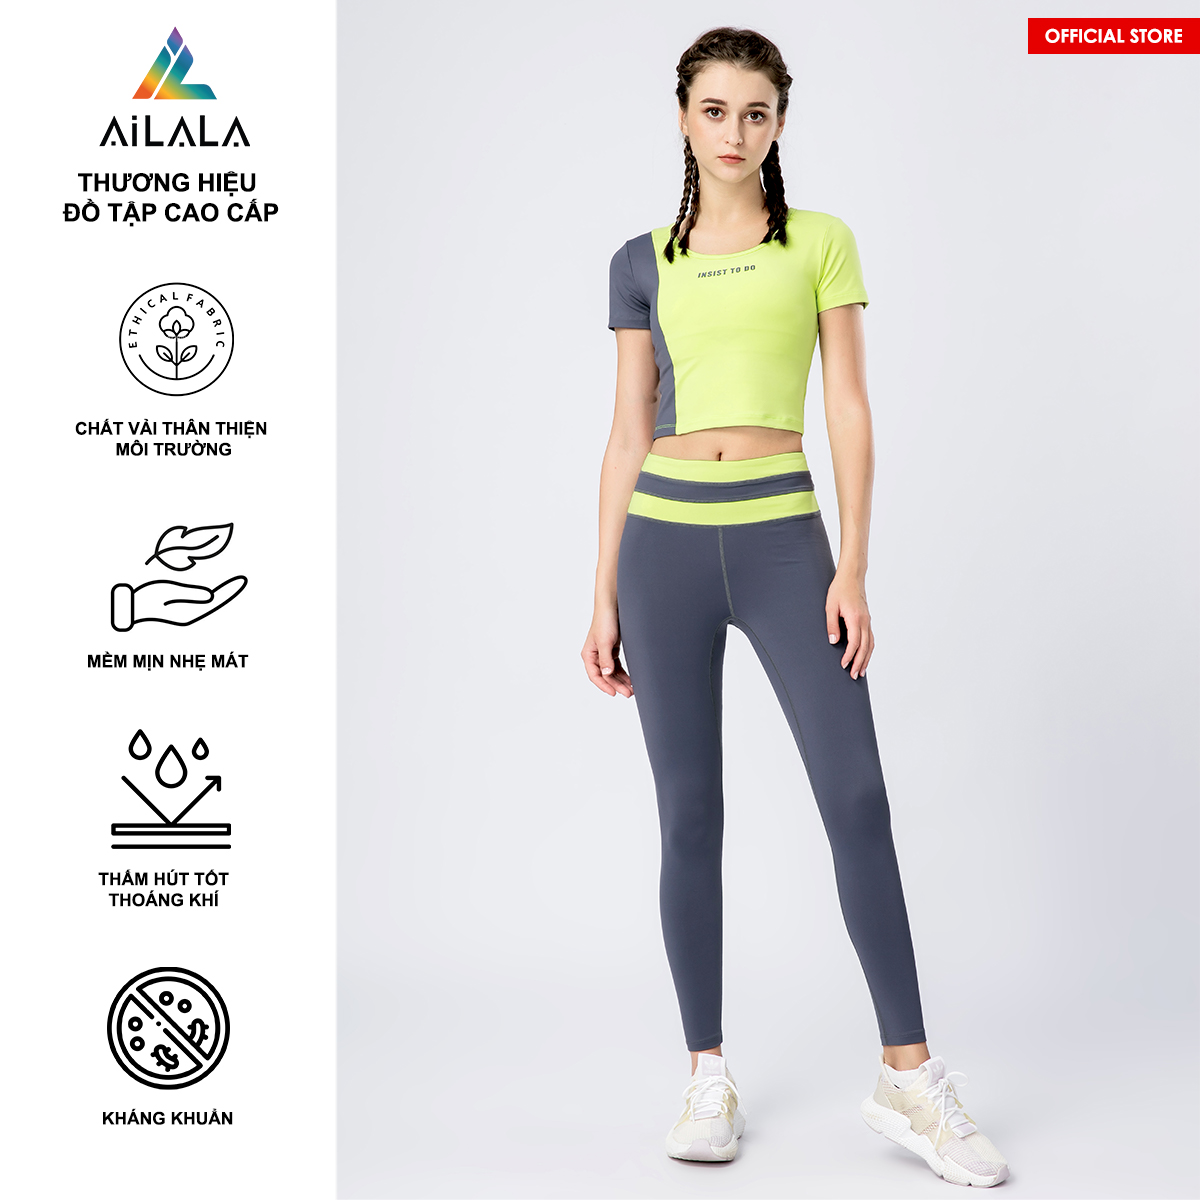 Bộ quần áo thể thao nữ AiLALA LUX46, Đồ tập Yoga Gym Pilates, chất vải Hi-tech cao cấp